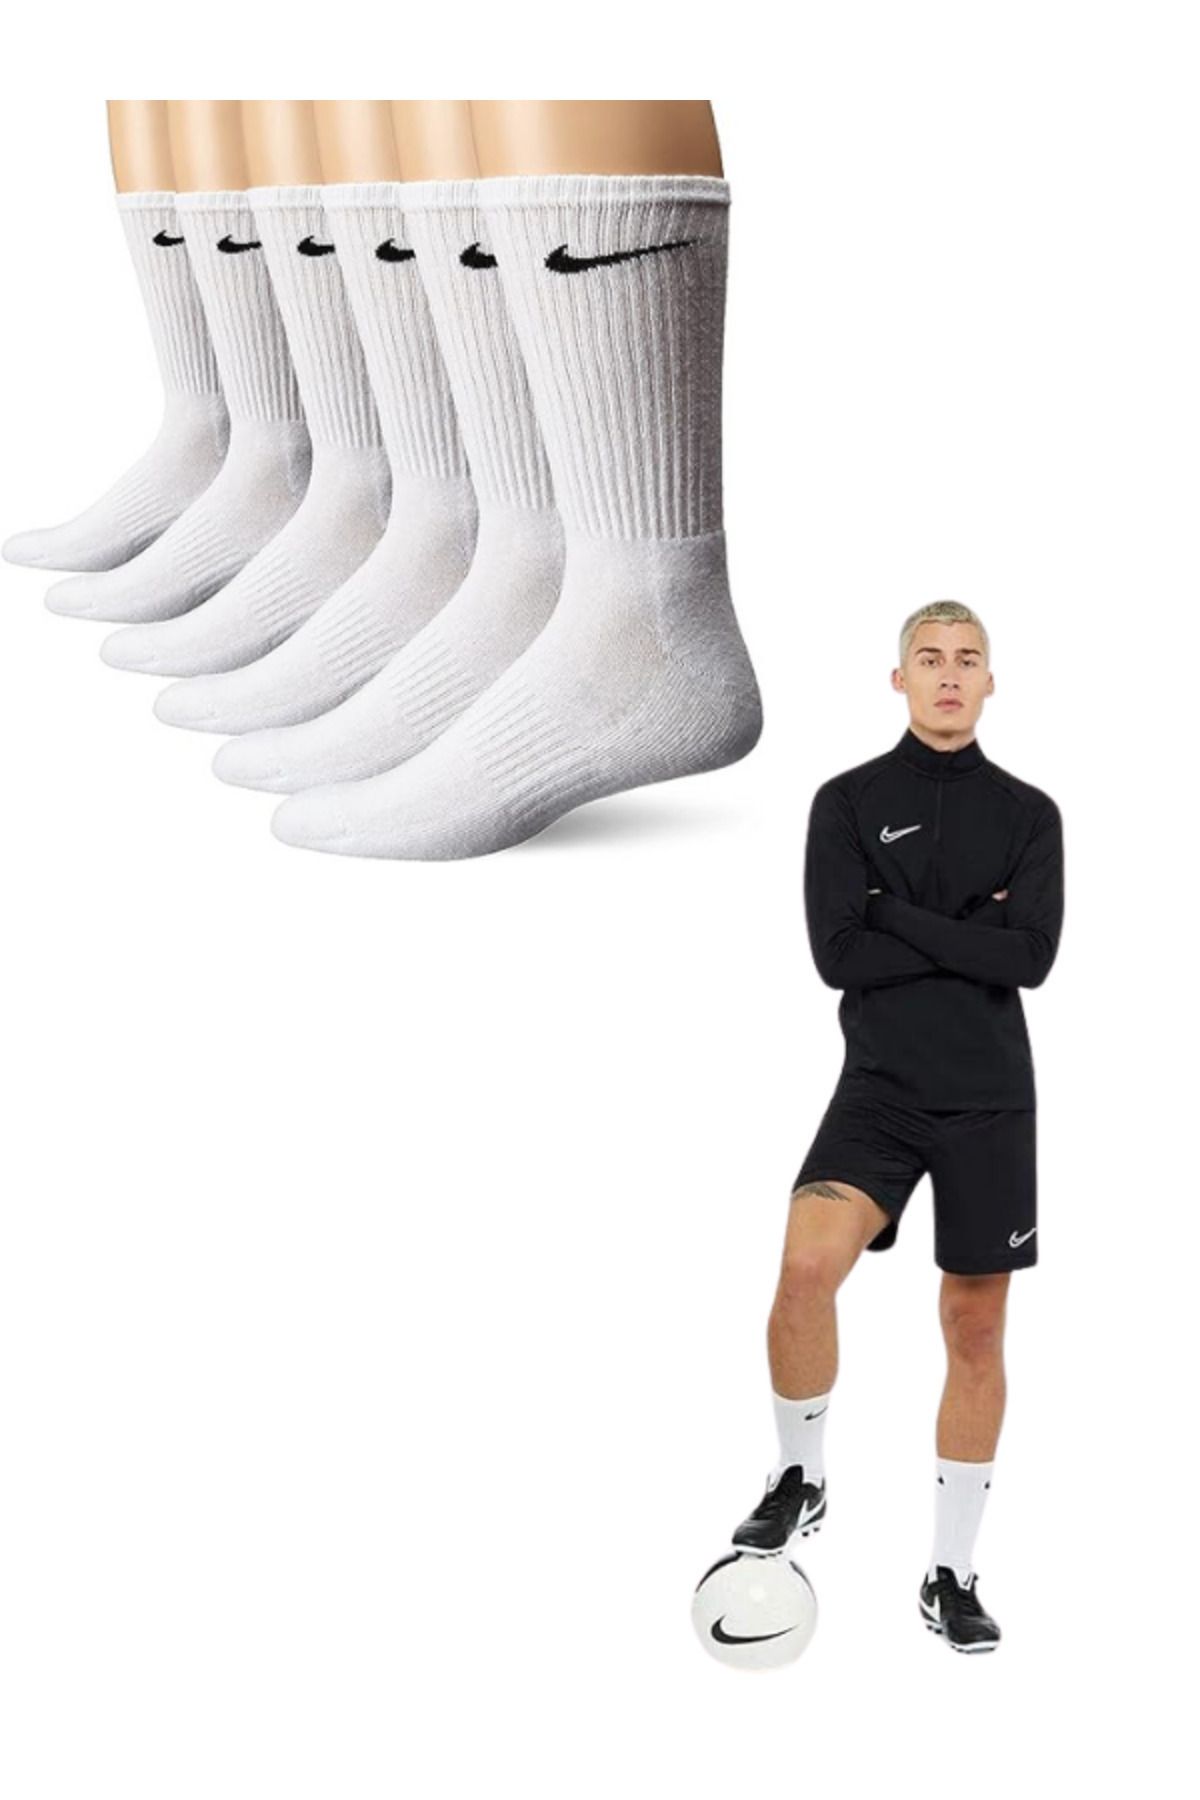 Socks Sirius 6 Çift Penye Kumaş Antrenman Spor Futbol Basketbol Koşu Tenis Çorap Seti / Siyah - Beyaz /